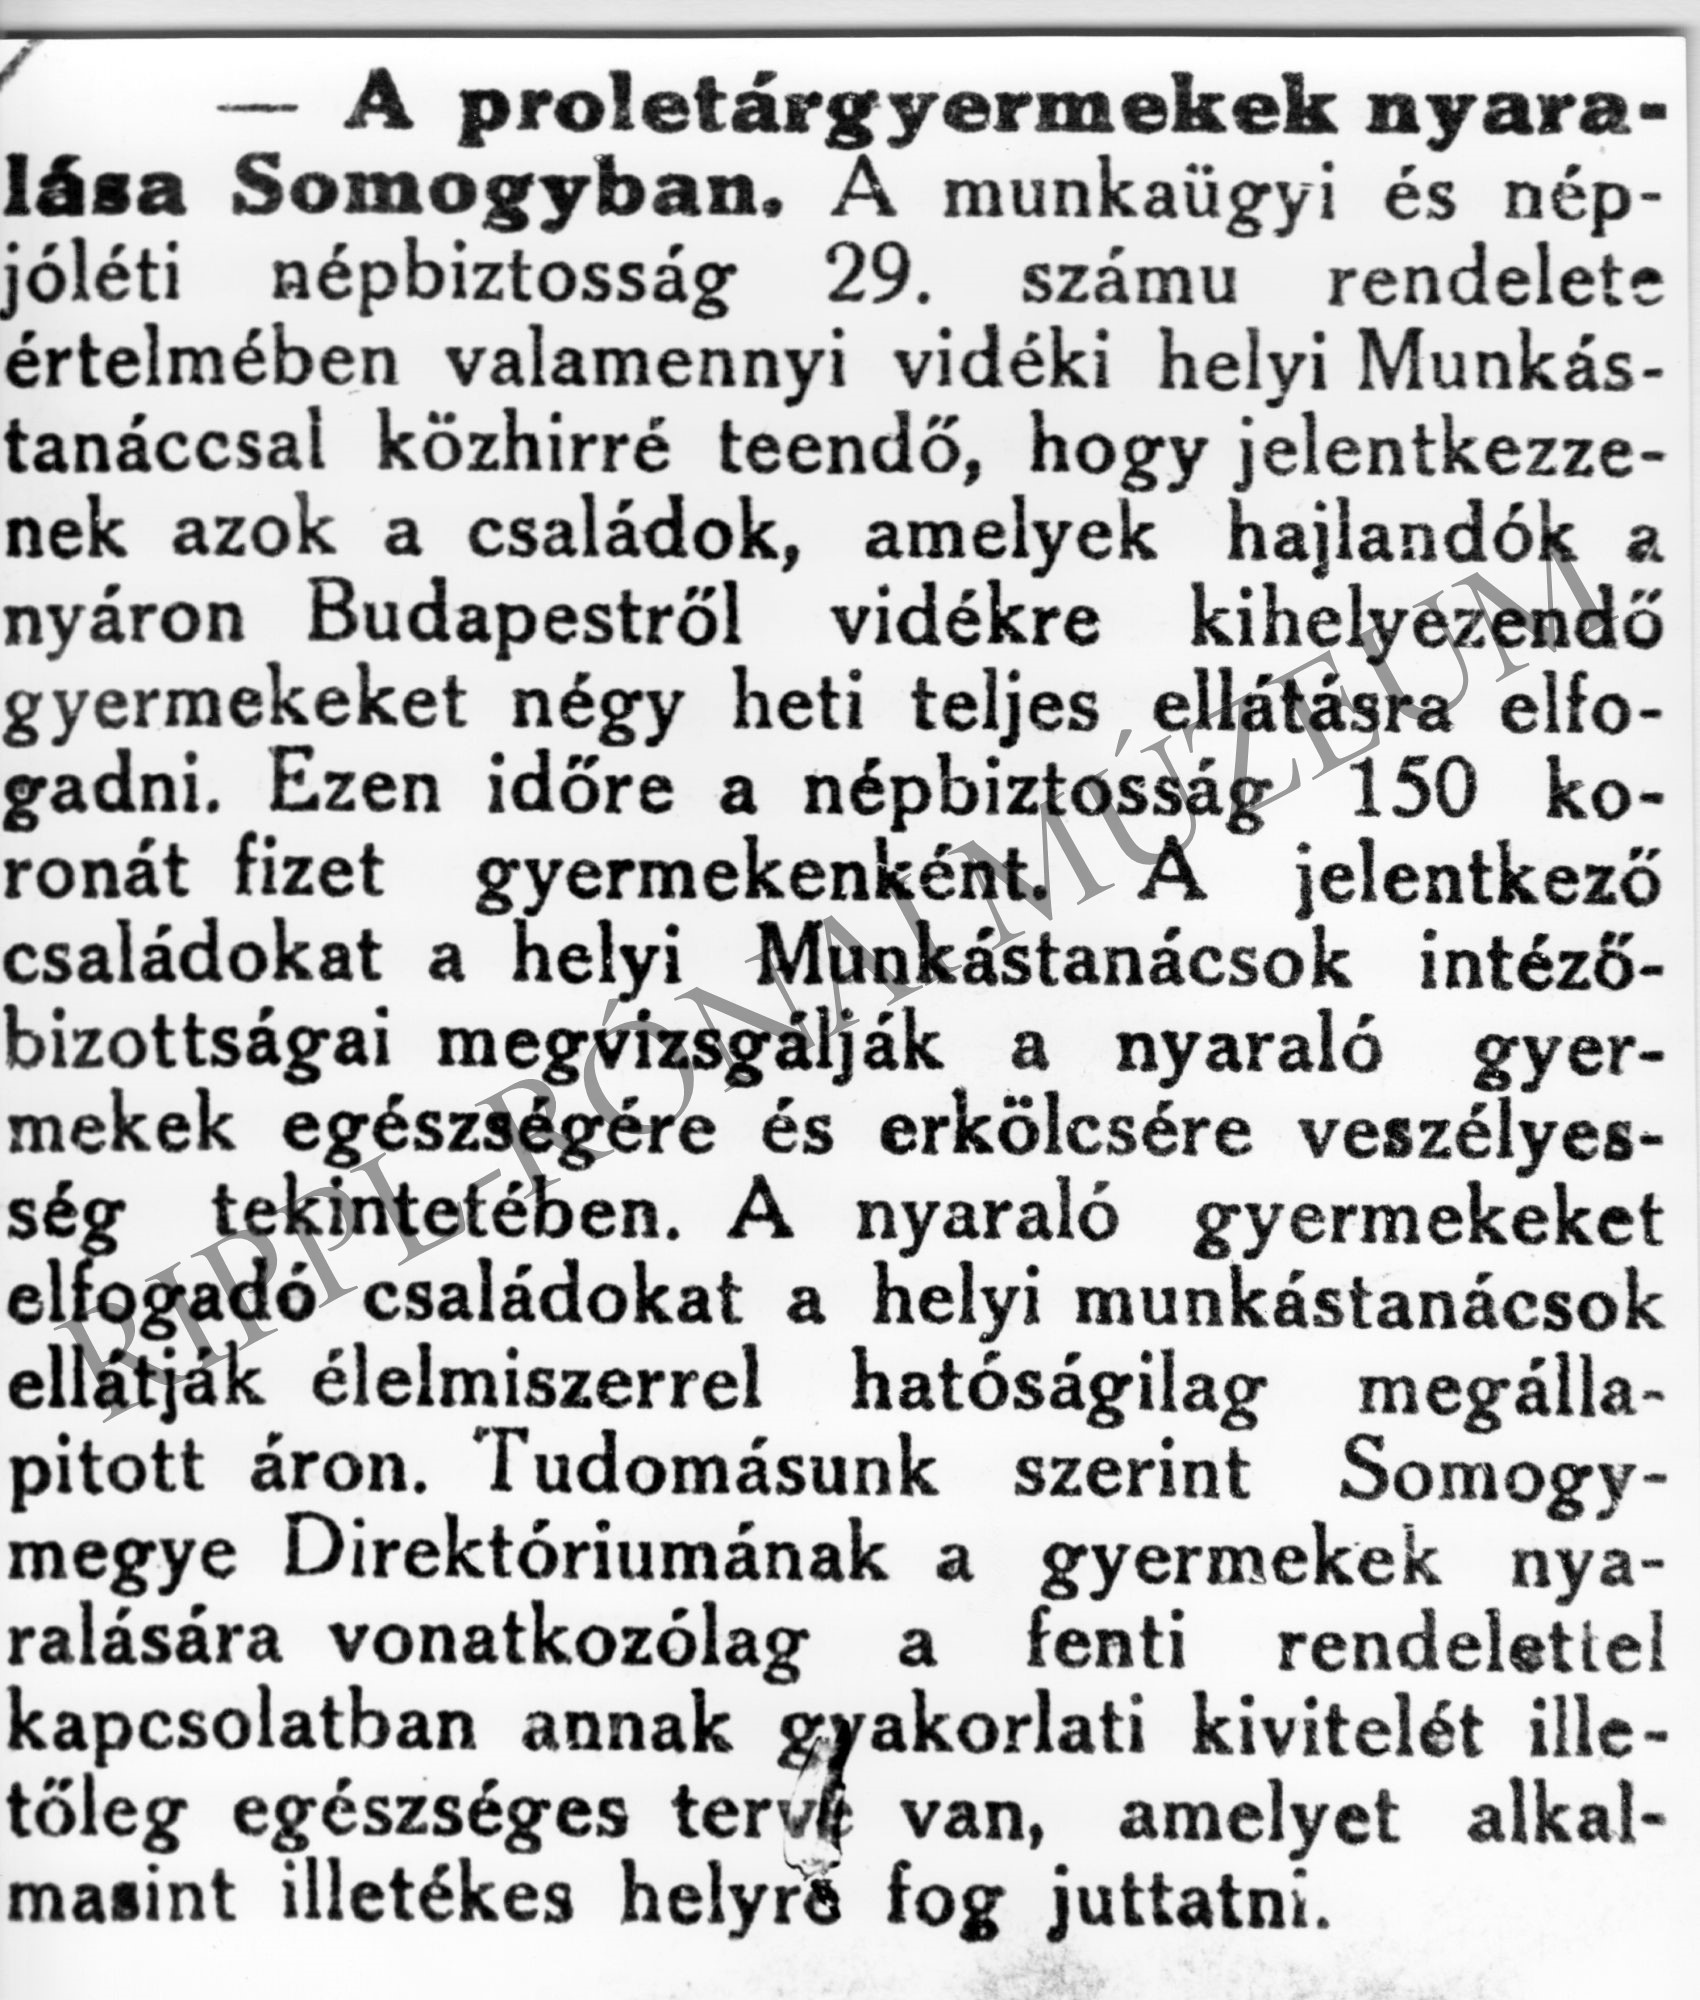 Újságcikk: A proletárgyermekek nyaralása Somogyban (Rippl-Rónai Múzeum CC BY-NC-SA)